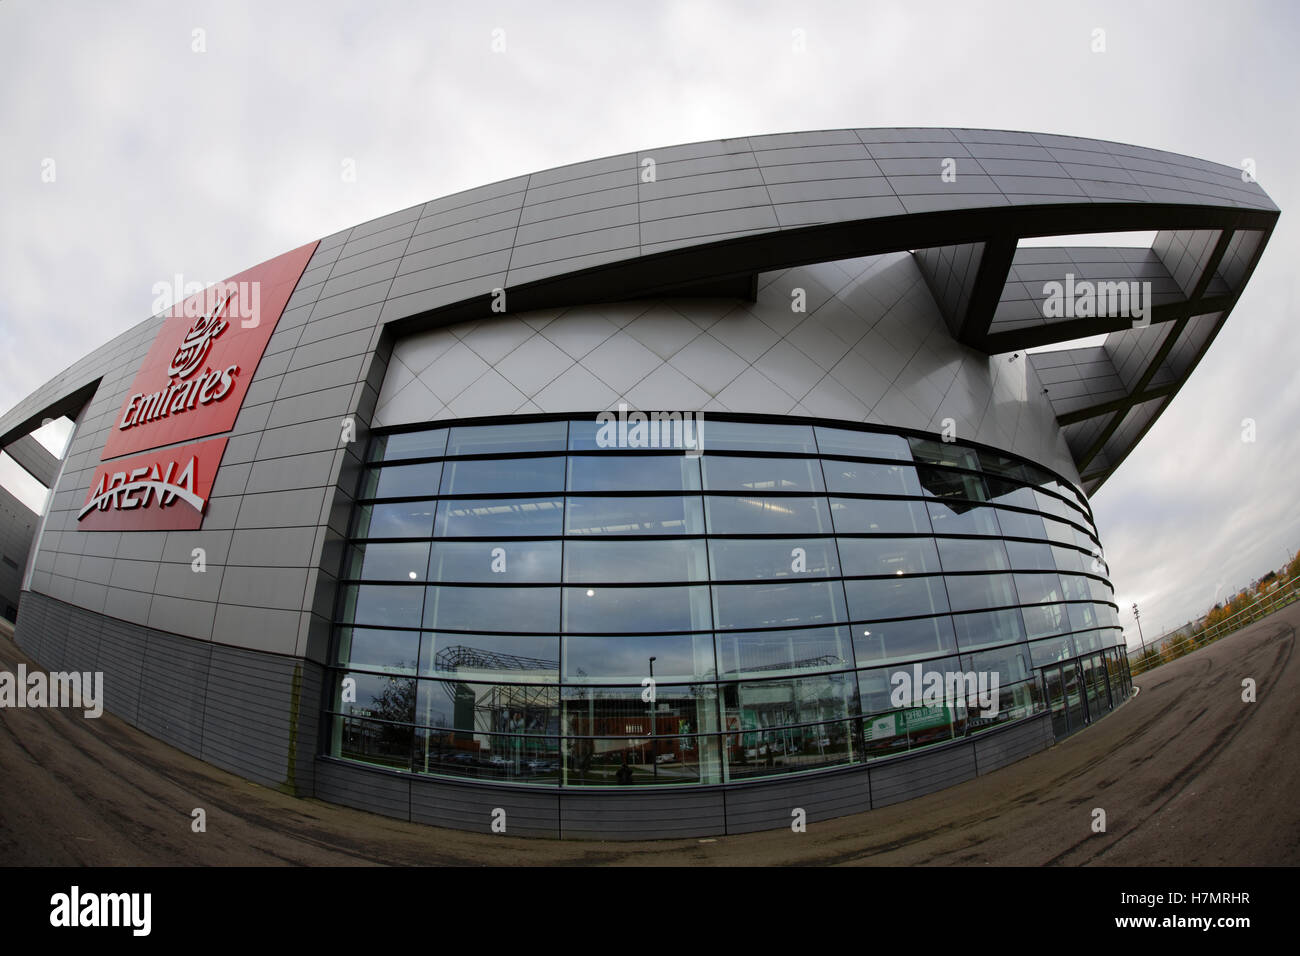 Emirate Arena Glasgow logo Stockfoto